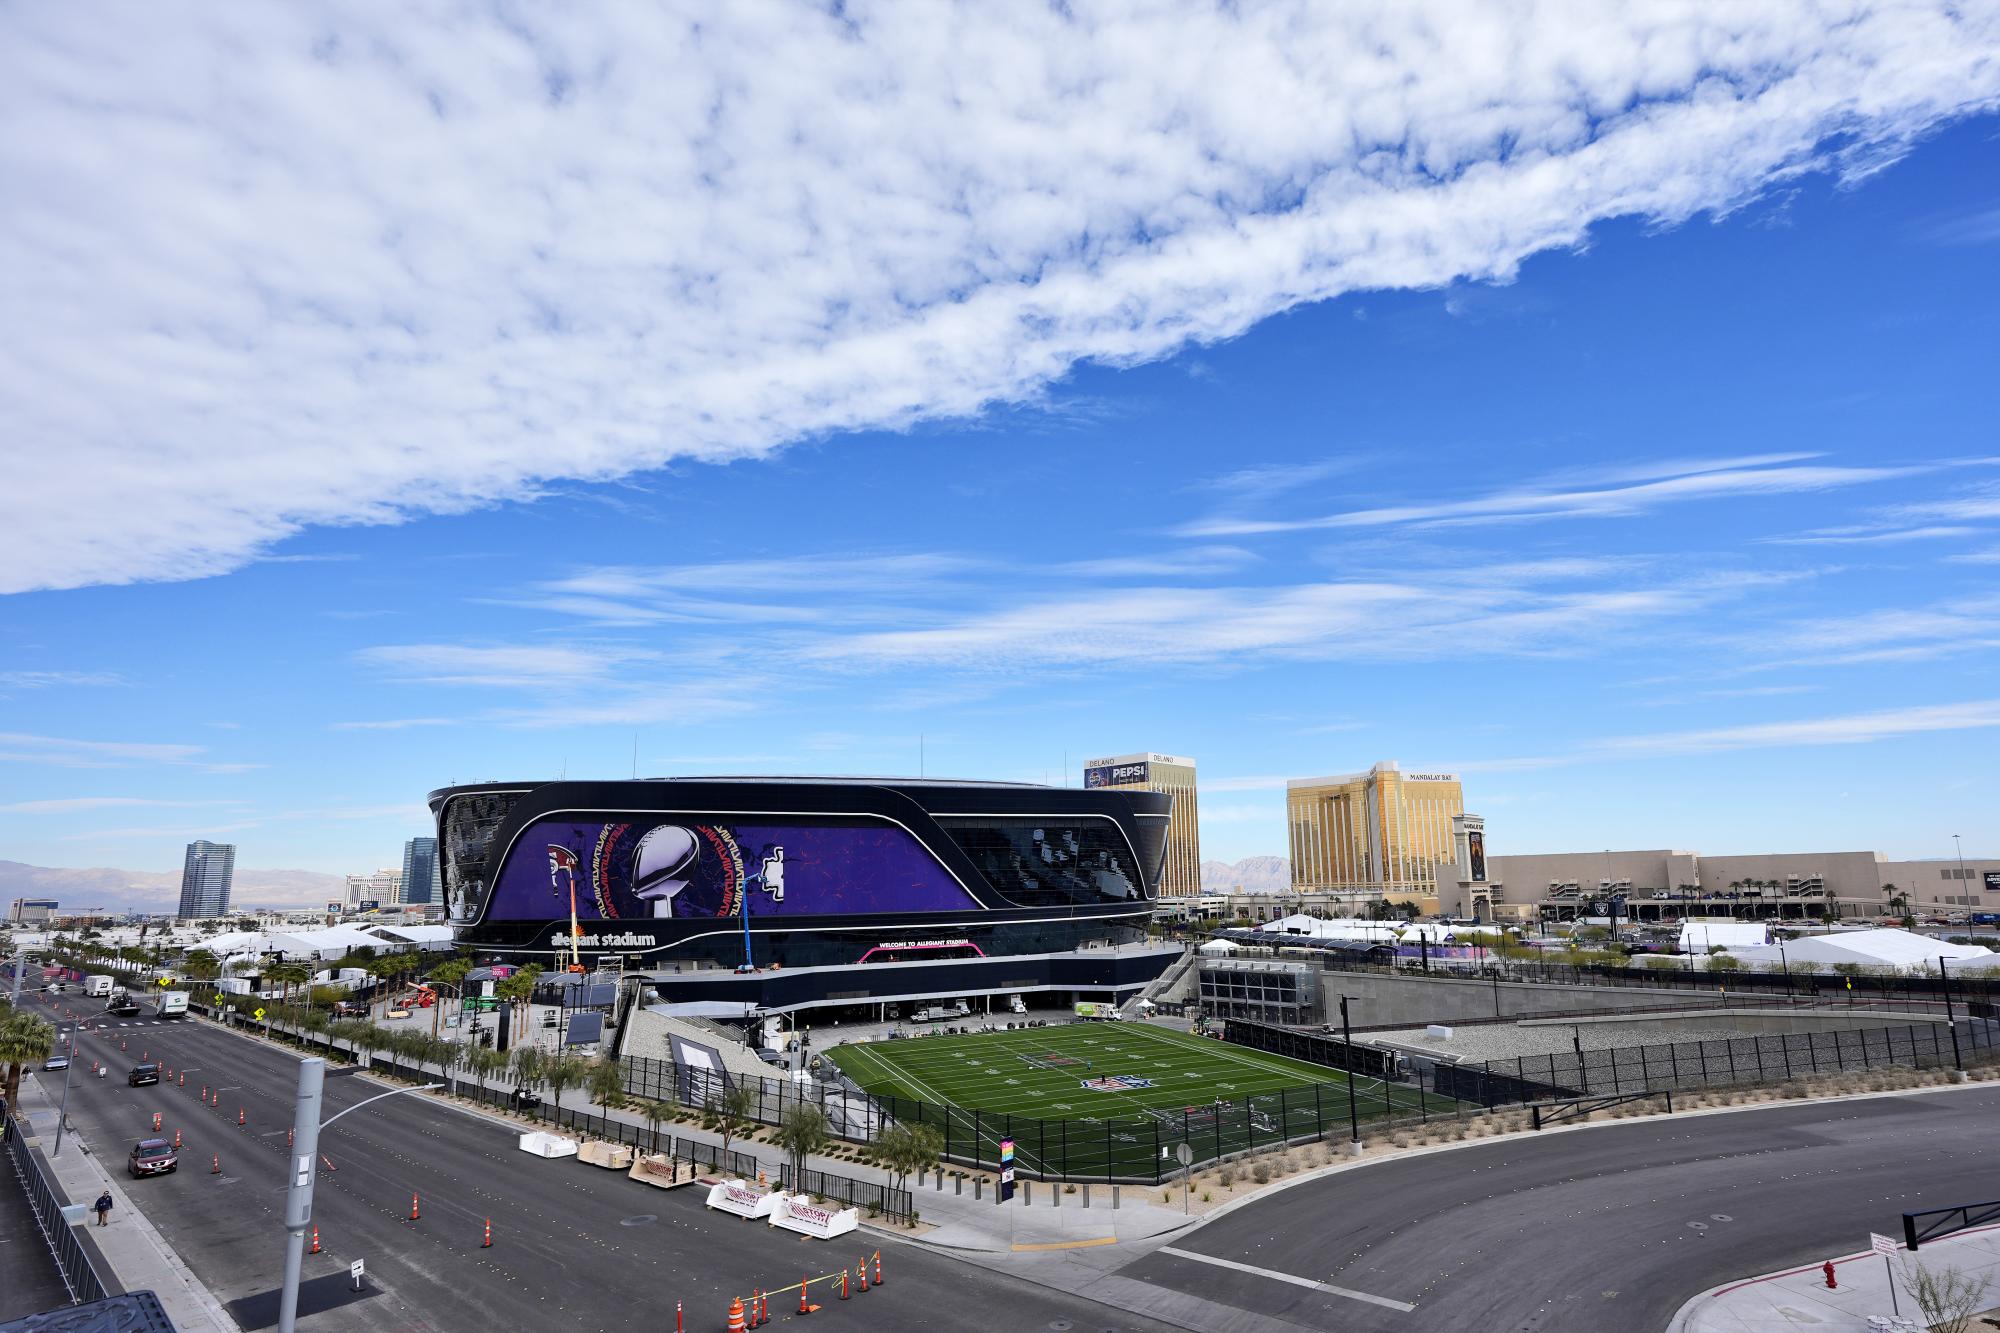 $!El campo más grande de la NFL y un techo retráctil hacen del estadio un escenario único para la NFL.